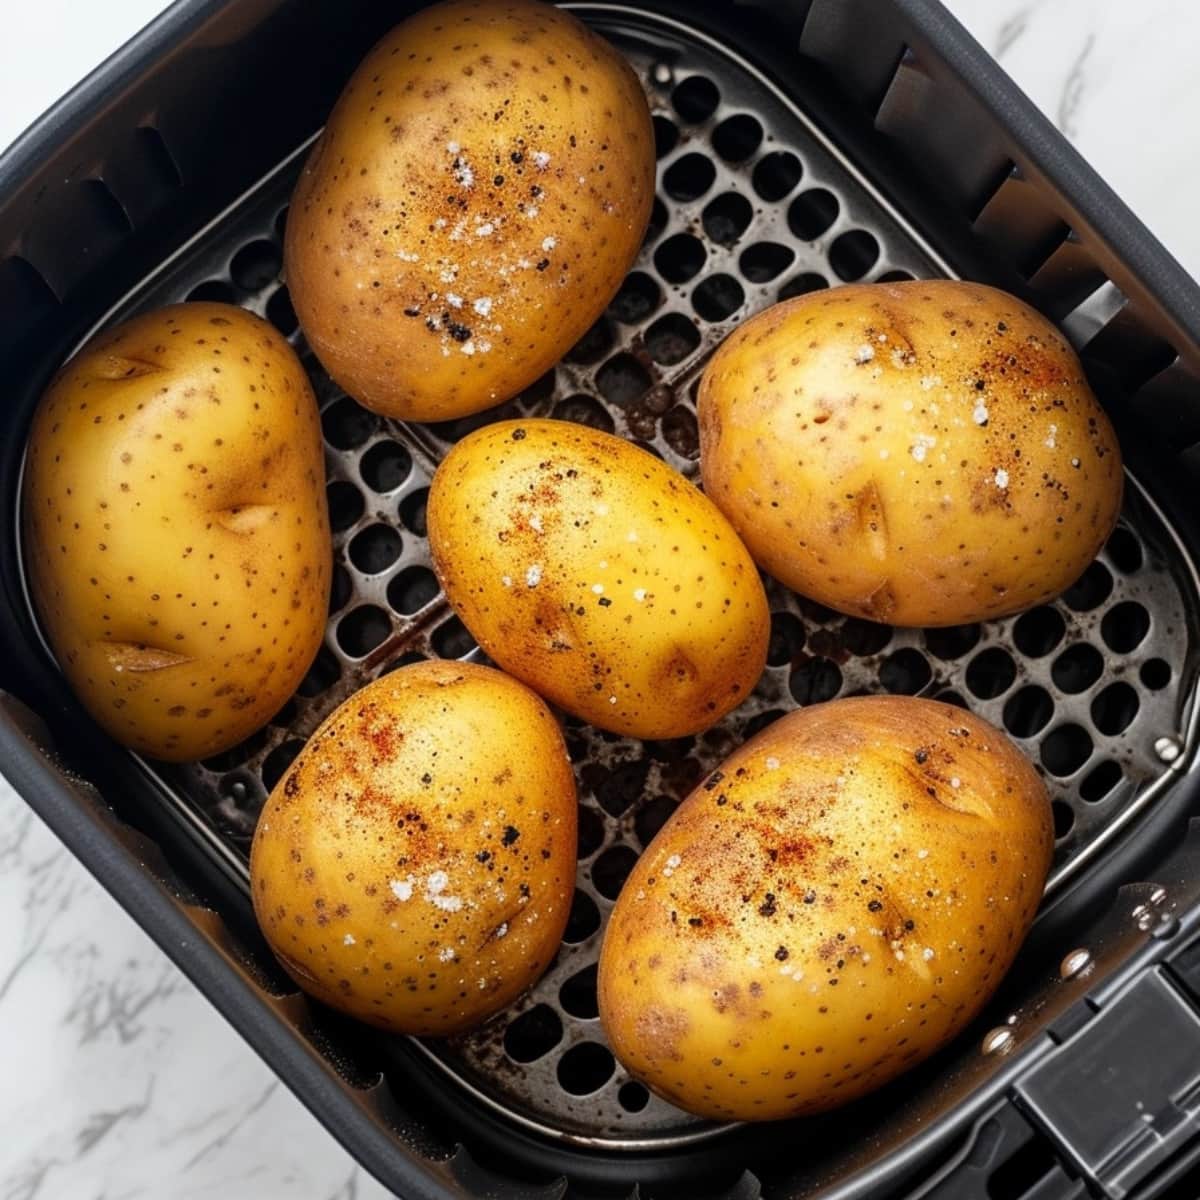 Potatoes seasoned with salt and pepper inside an air fryer basket.